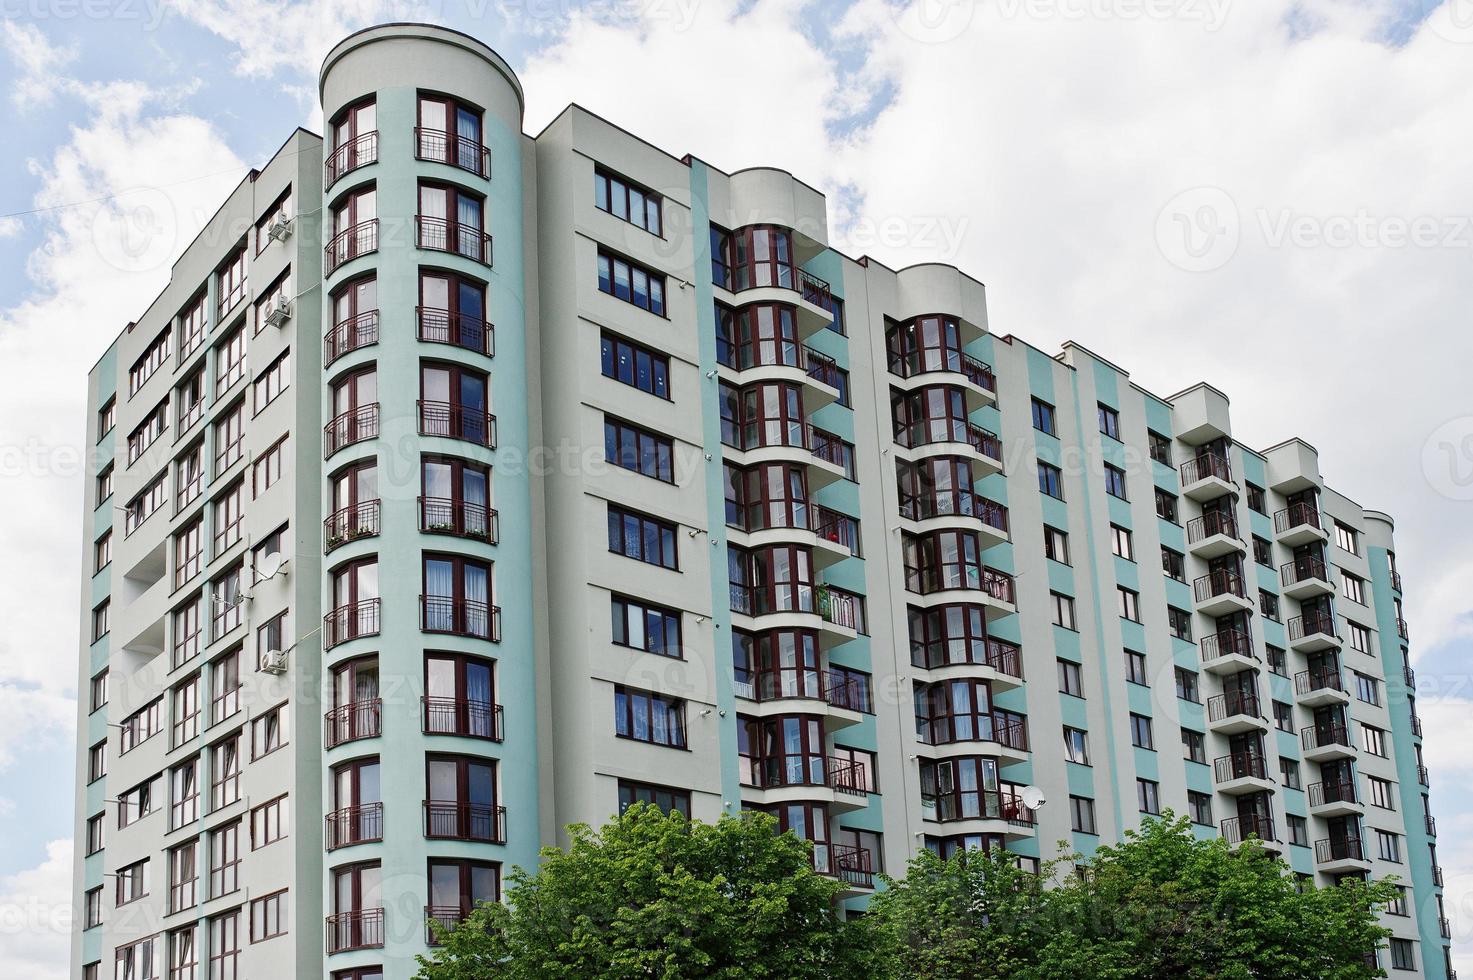 balkon van nieuwe moderne turquoise woongebouw met meerdere verdiepingen in woonwijk op zonnige blauwe hemel. foto